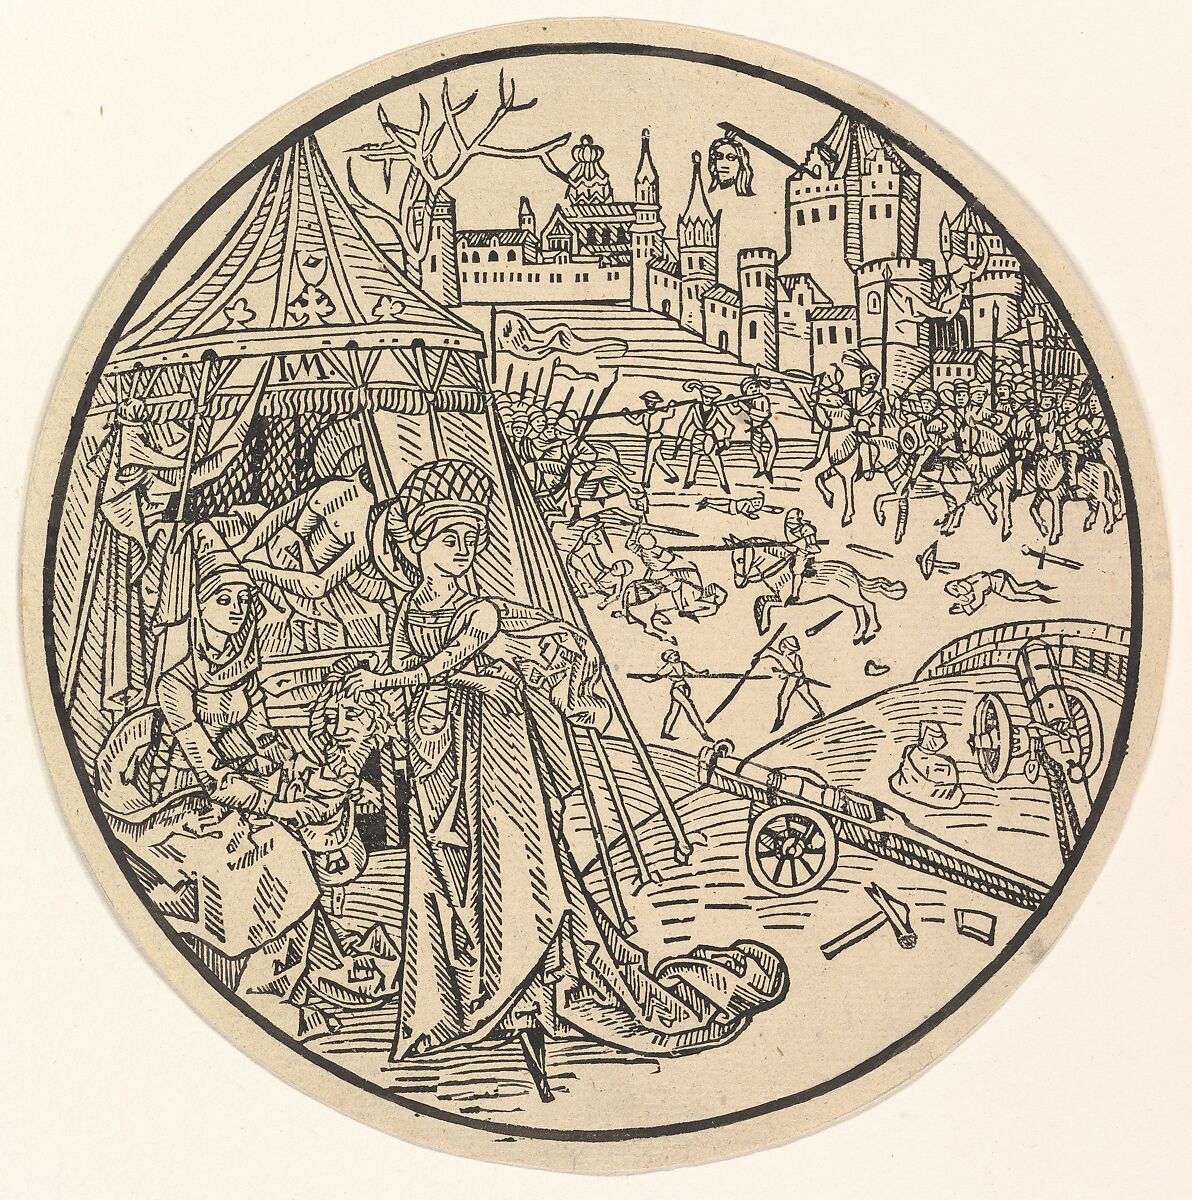 Judith with the Head of Holofernes, Israhel van Meckenem (German, Meckenem ca. 1440/45–1503 Bocholt), Reverse woodcut 